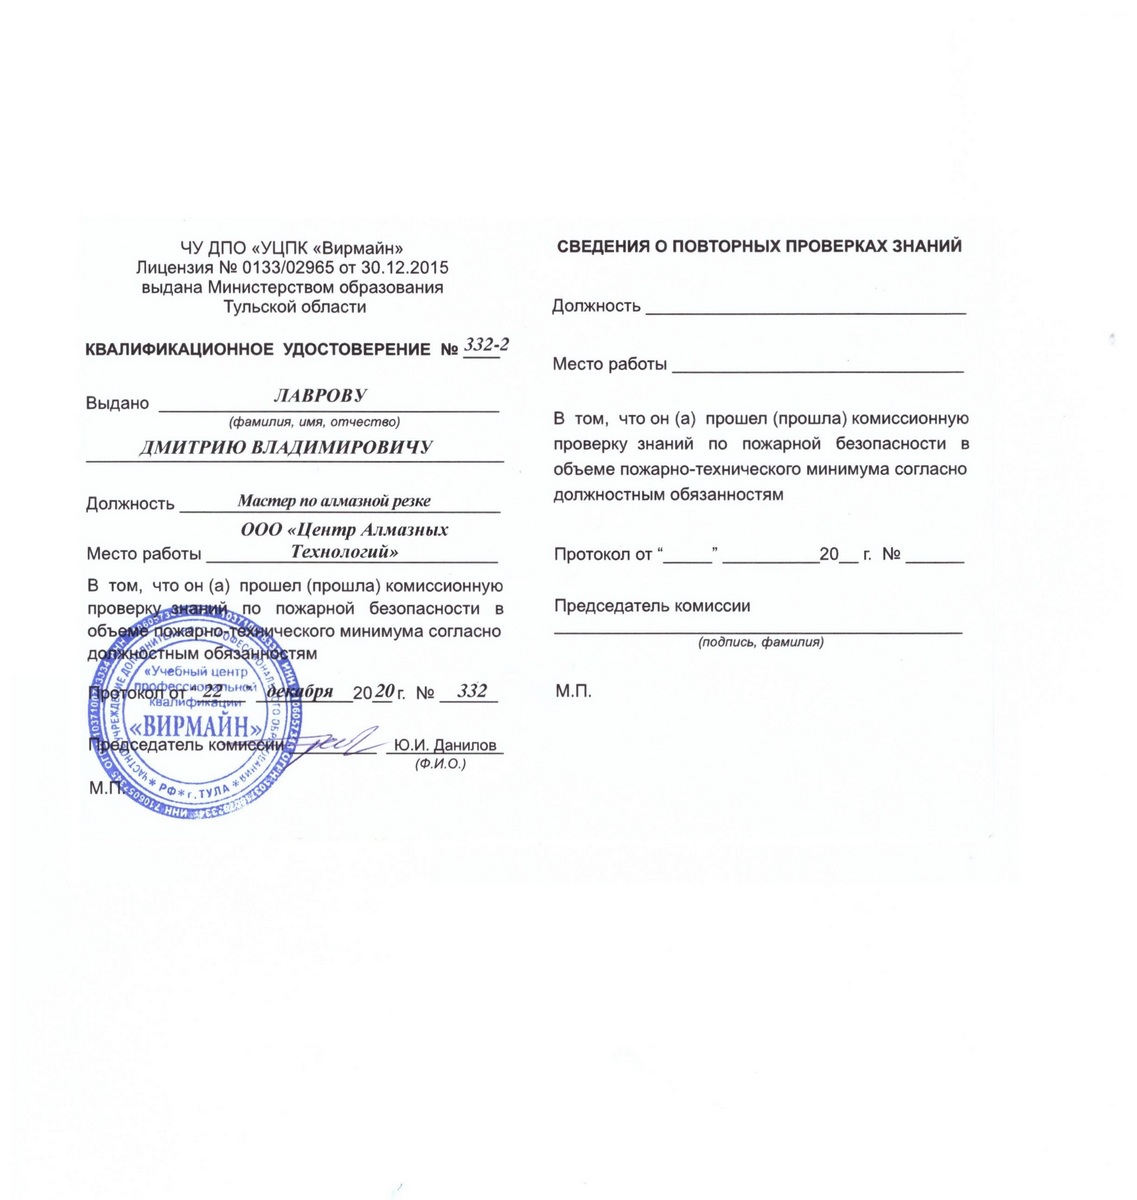 Квалификационное удостоверение сотрудника ЦАТ Дмитрий Лавров